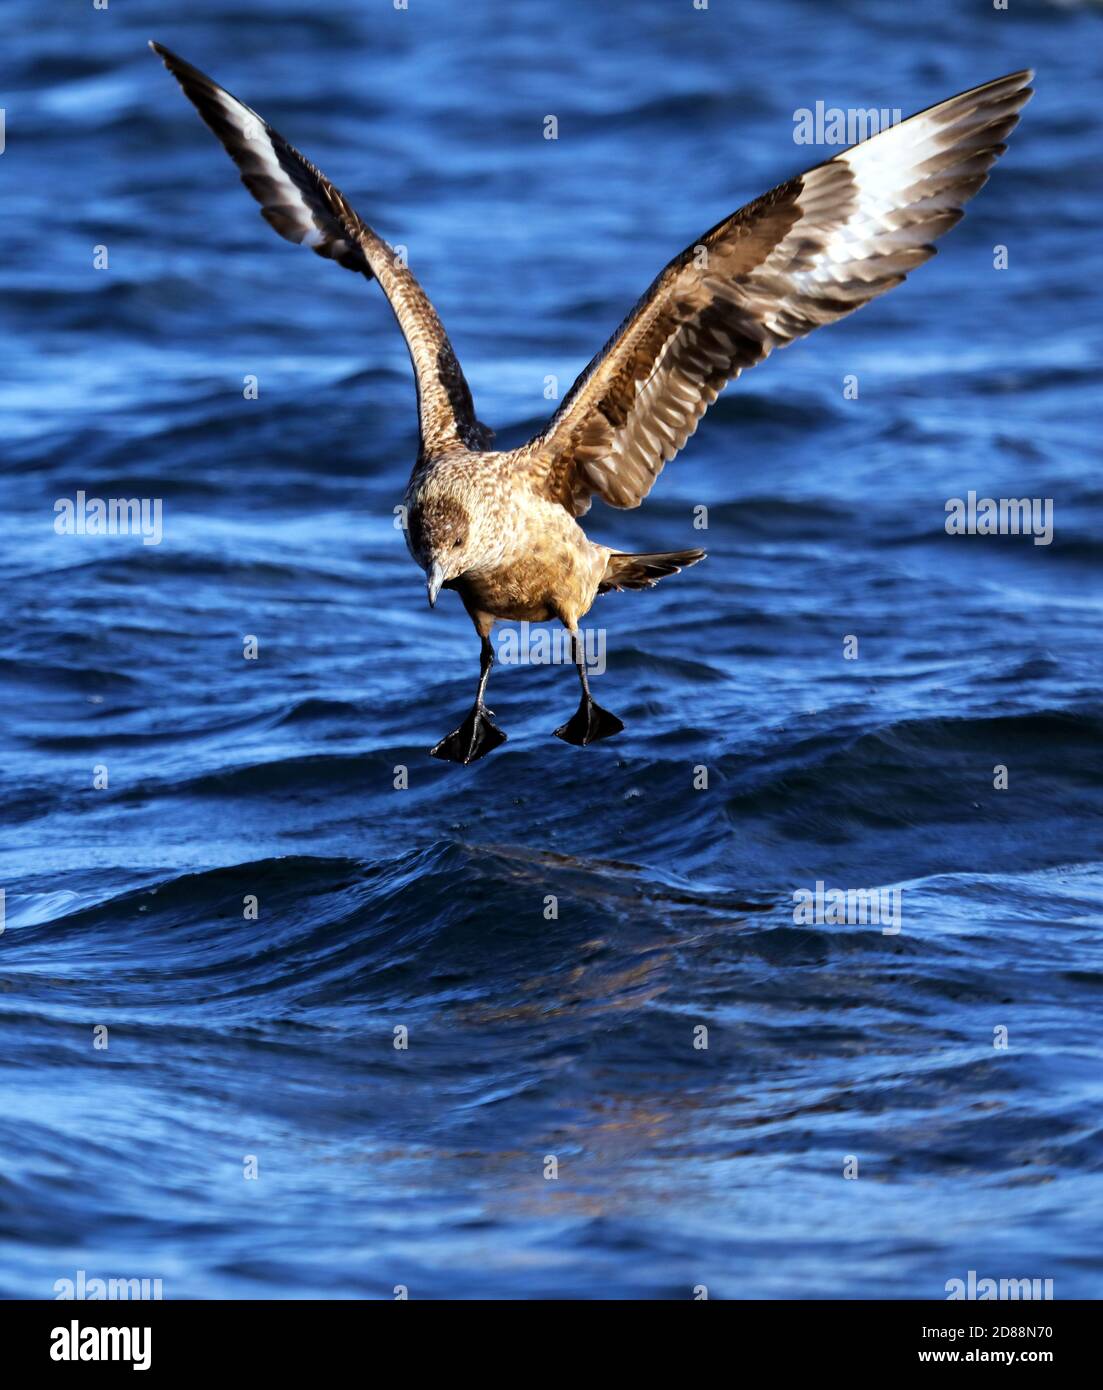 Große Skua, Stercorarius skua, Landung des Atlantischen Ozeans um die inneren Hebriden von Schottland. Sie sind auch als Bonxie bekannt. Stockfoto